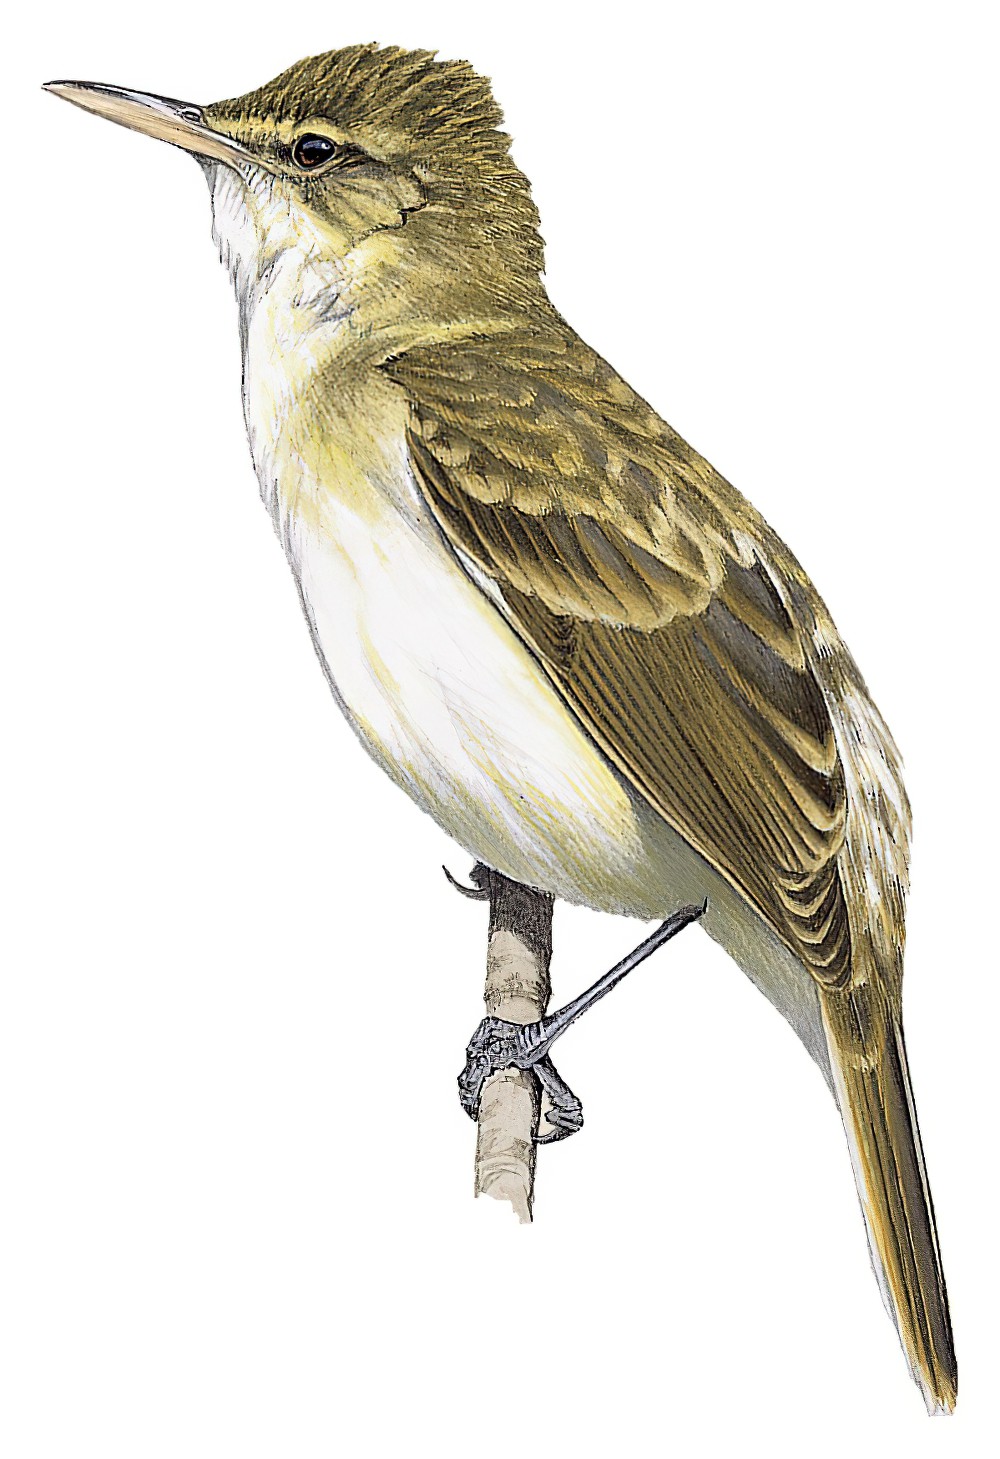 Rimitara Reed Warbler / Acrocephalus rimitarae